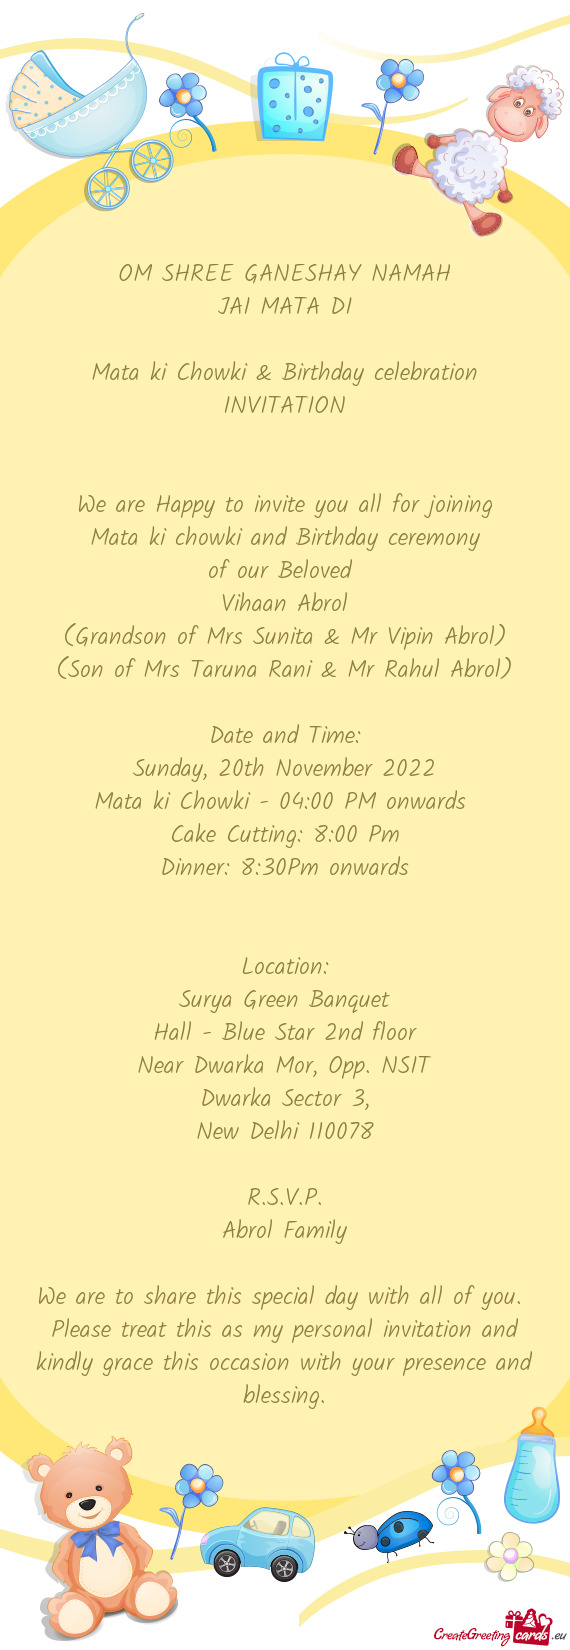 Mata ki chowki and Birthday ceremony